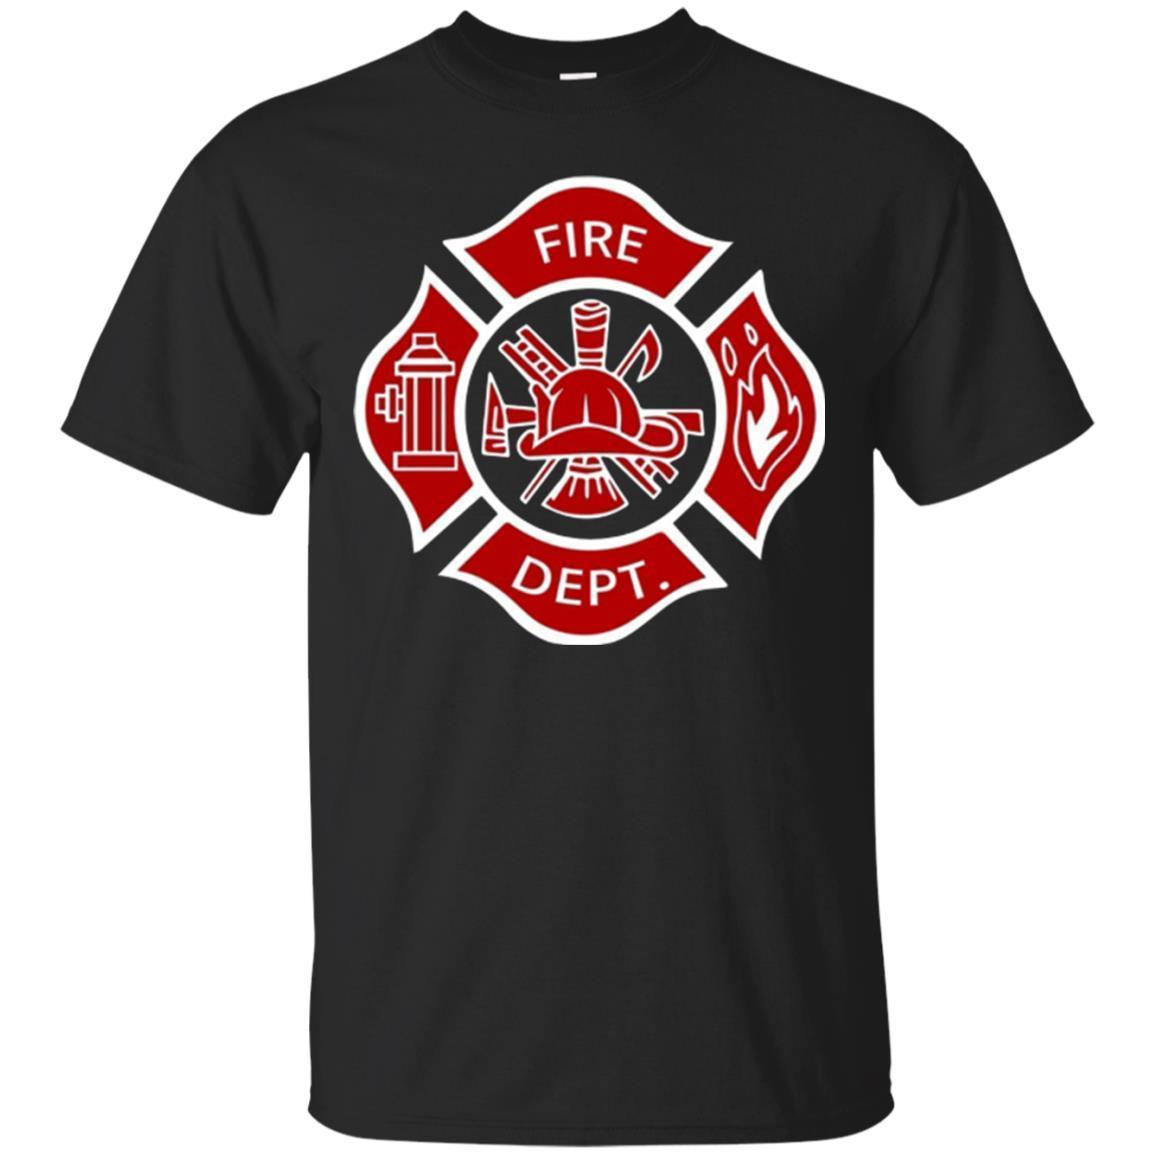 Firefighter Fireman Fire Dept Rescue Uniform T-shirt Fashion T-shirt ...